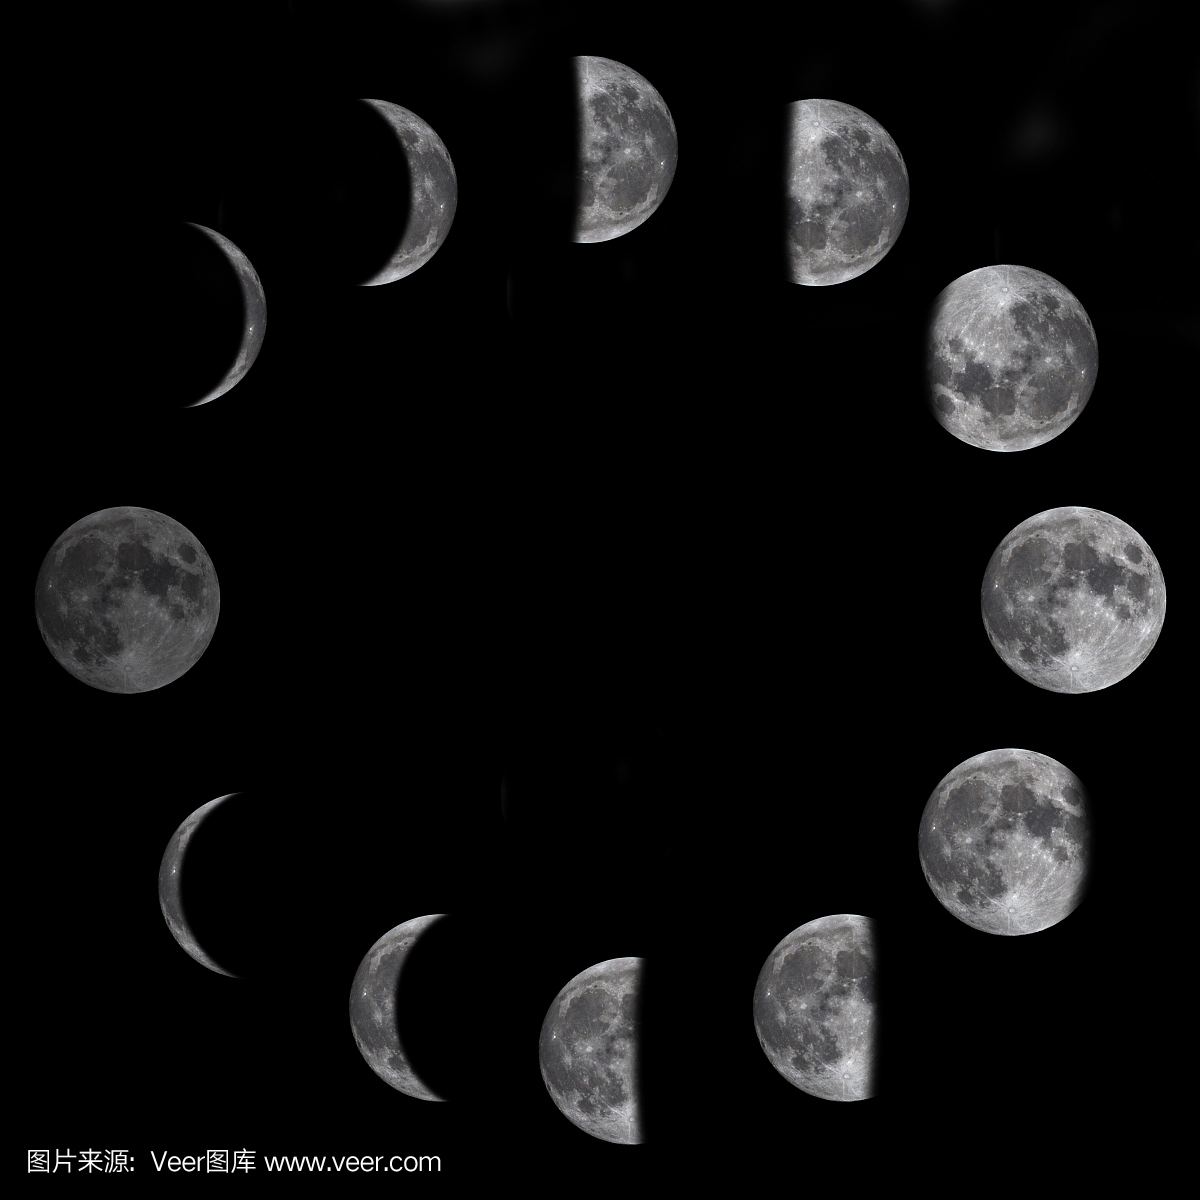 三种风格月相图矢量素材 Moon Phases – Free Vector Illustrations – 设计小咖